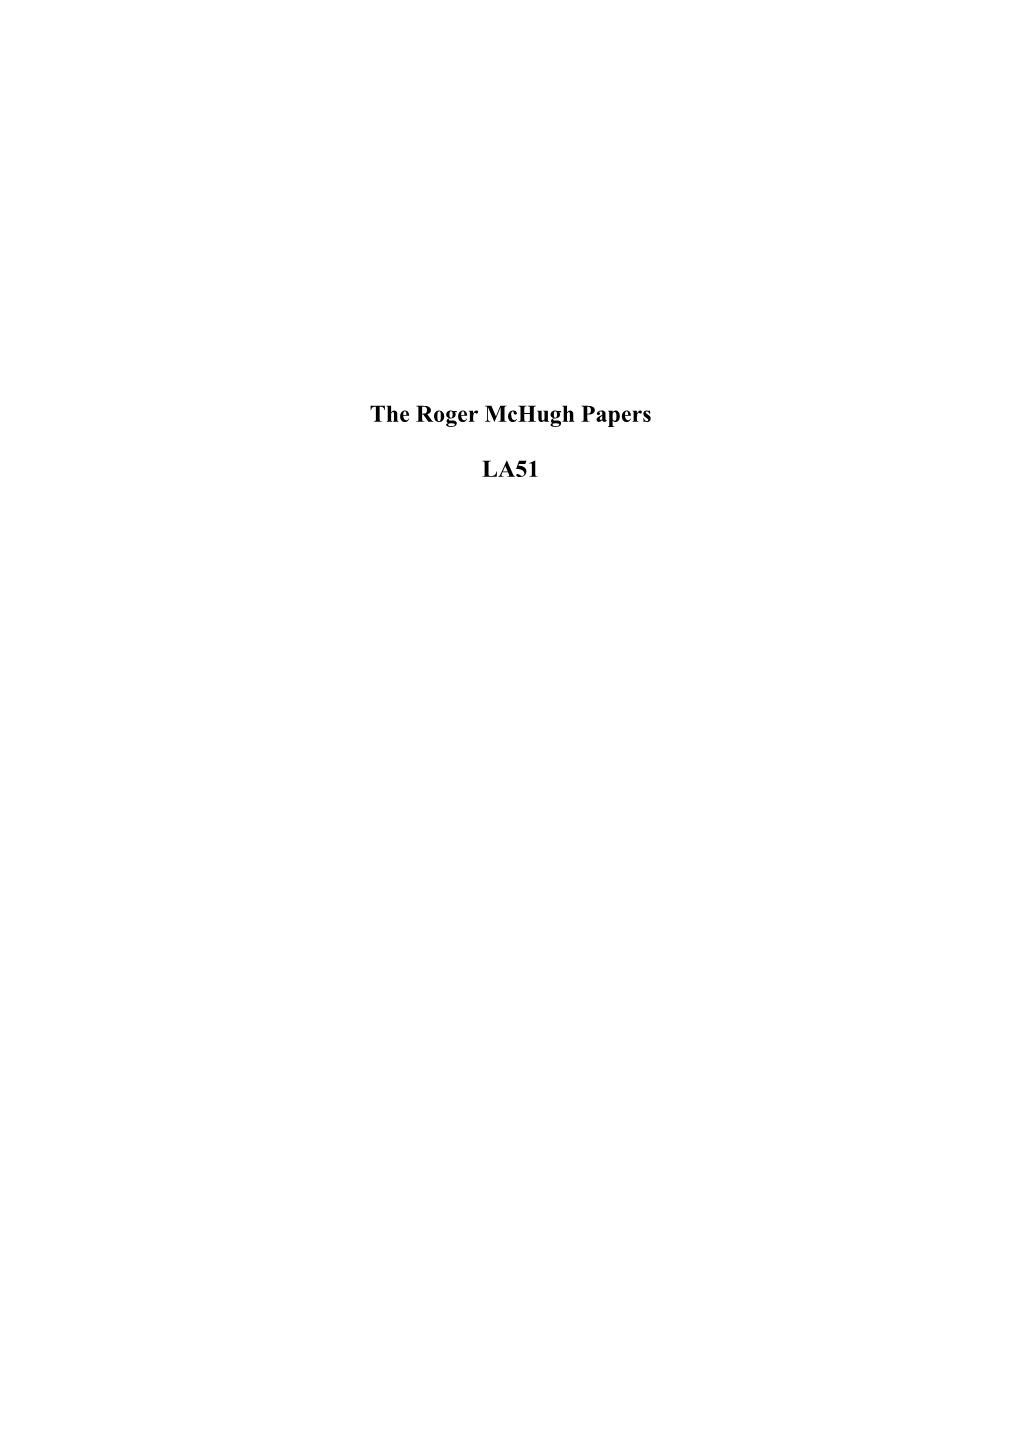 The Roger Mchugh Papers LA51